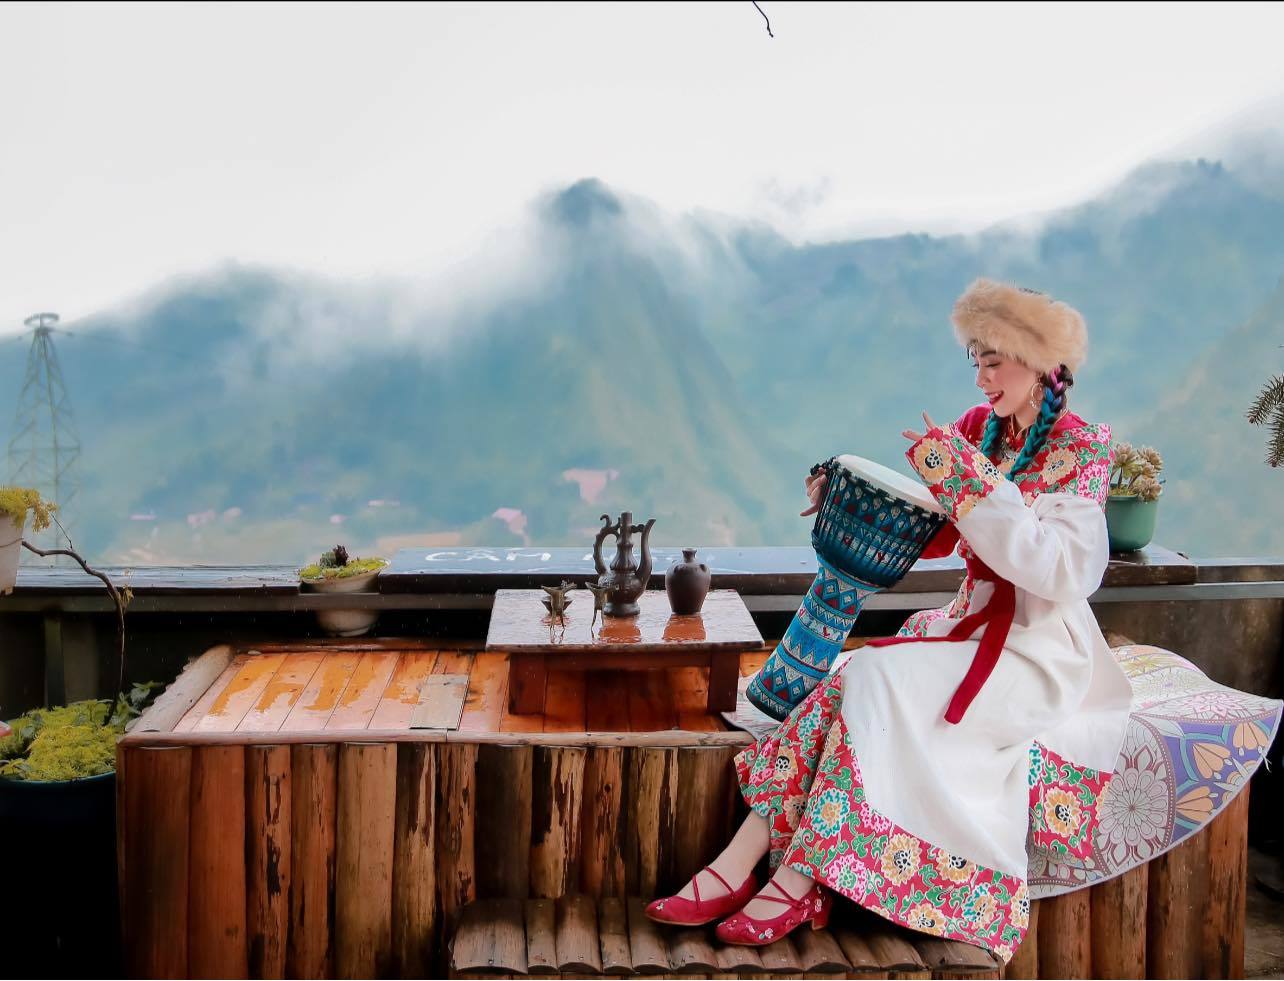 Hãy cùng chiêm ngưỡng vẻ đẹp hoang sơ và hiền lành của một thiếu nữ du mục Mông Cổ trong bức ảnh đầy bình yên và sức sống này.